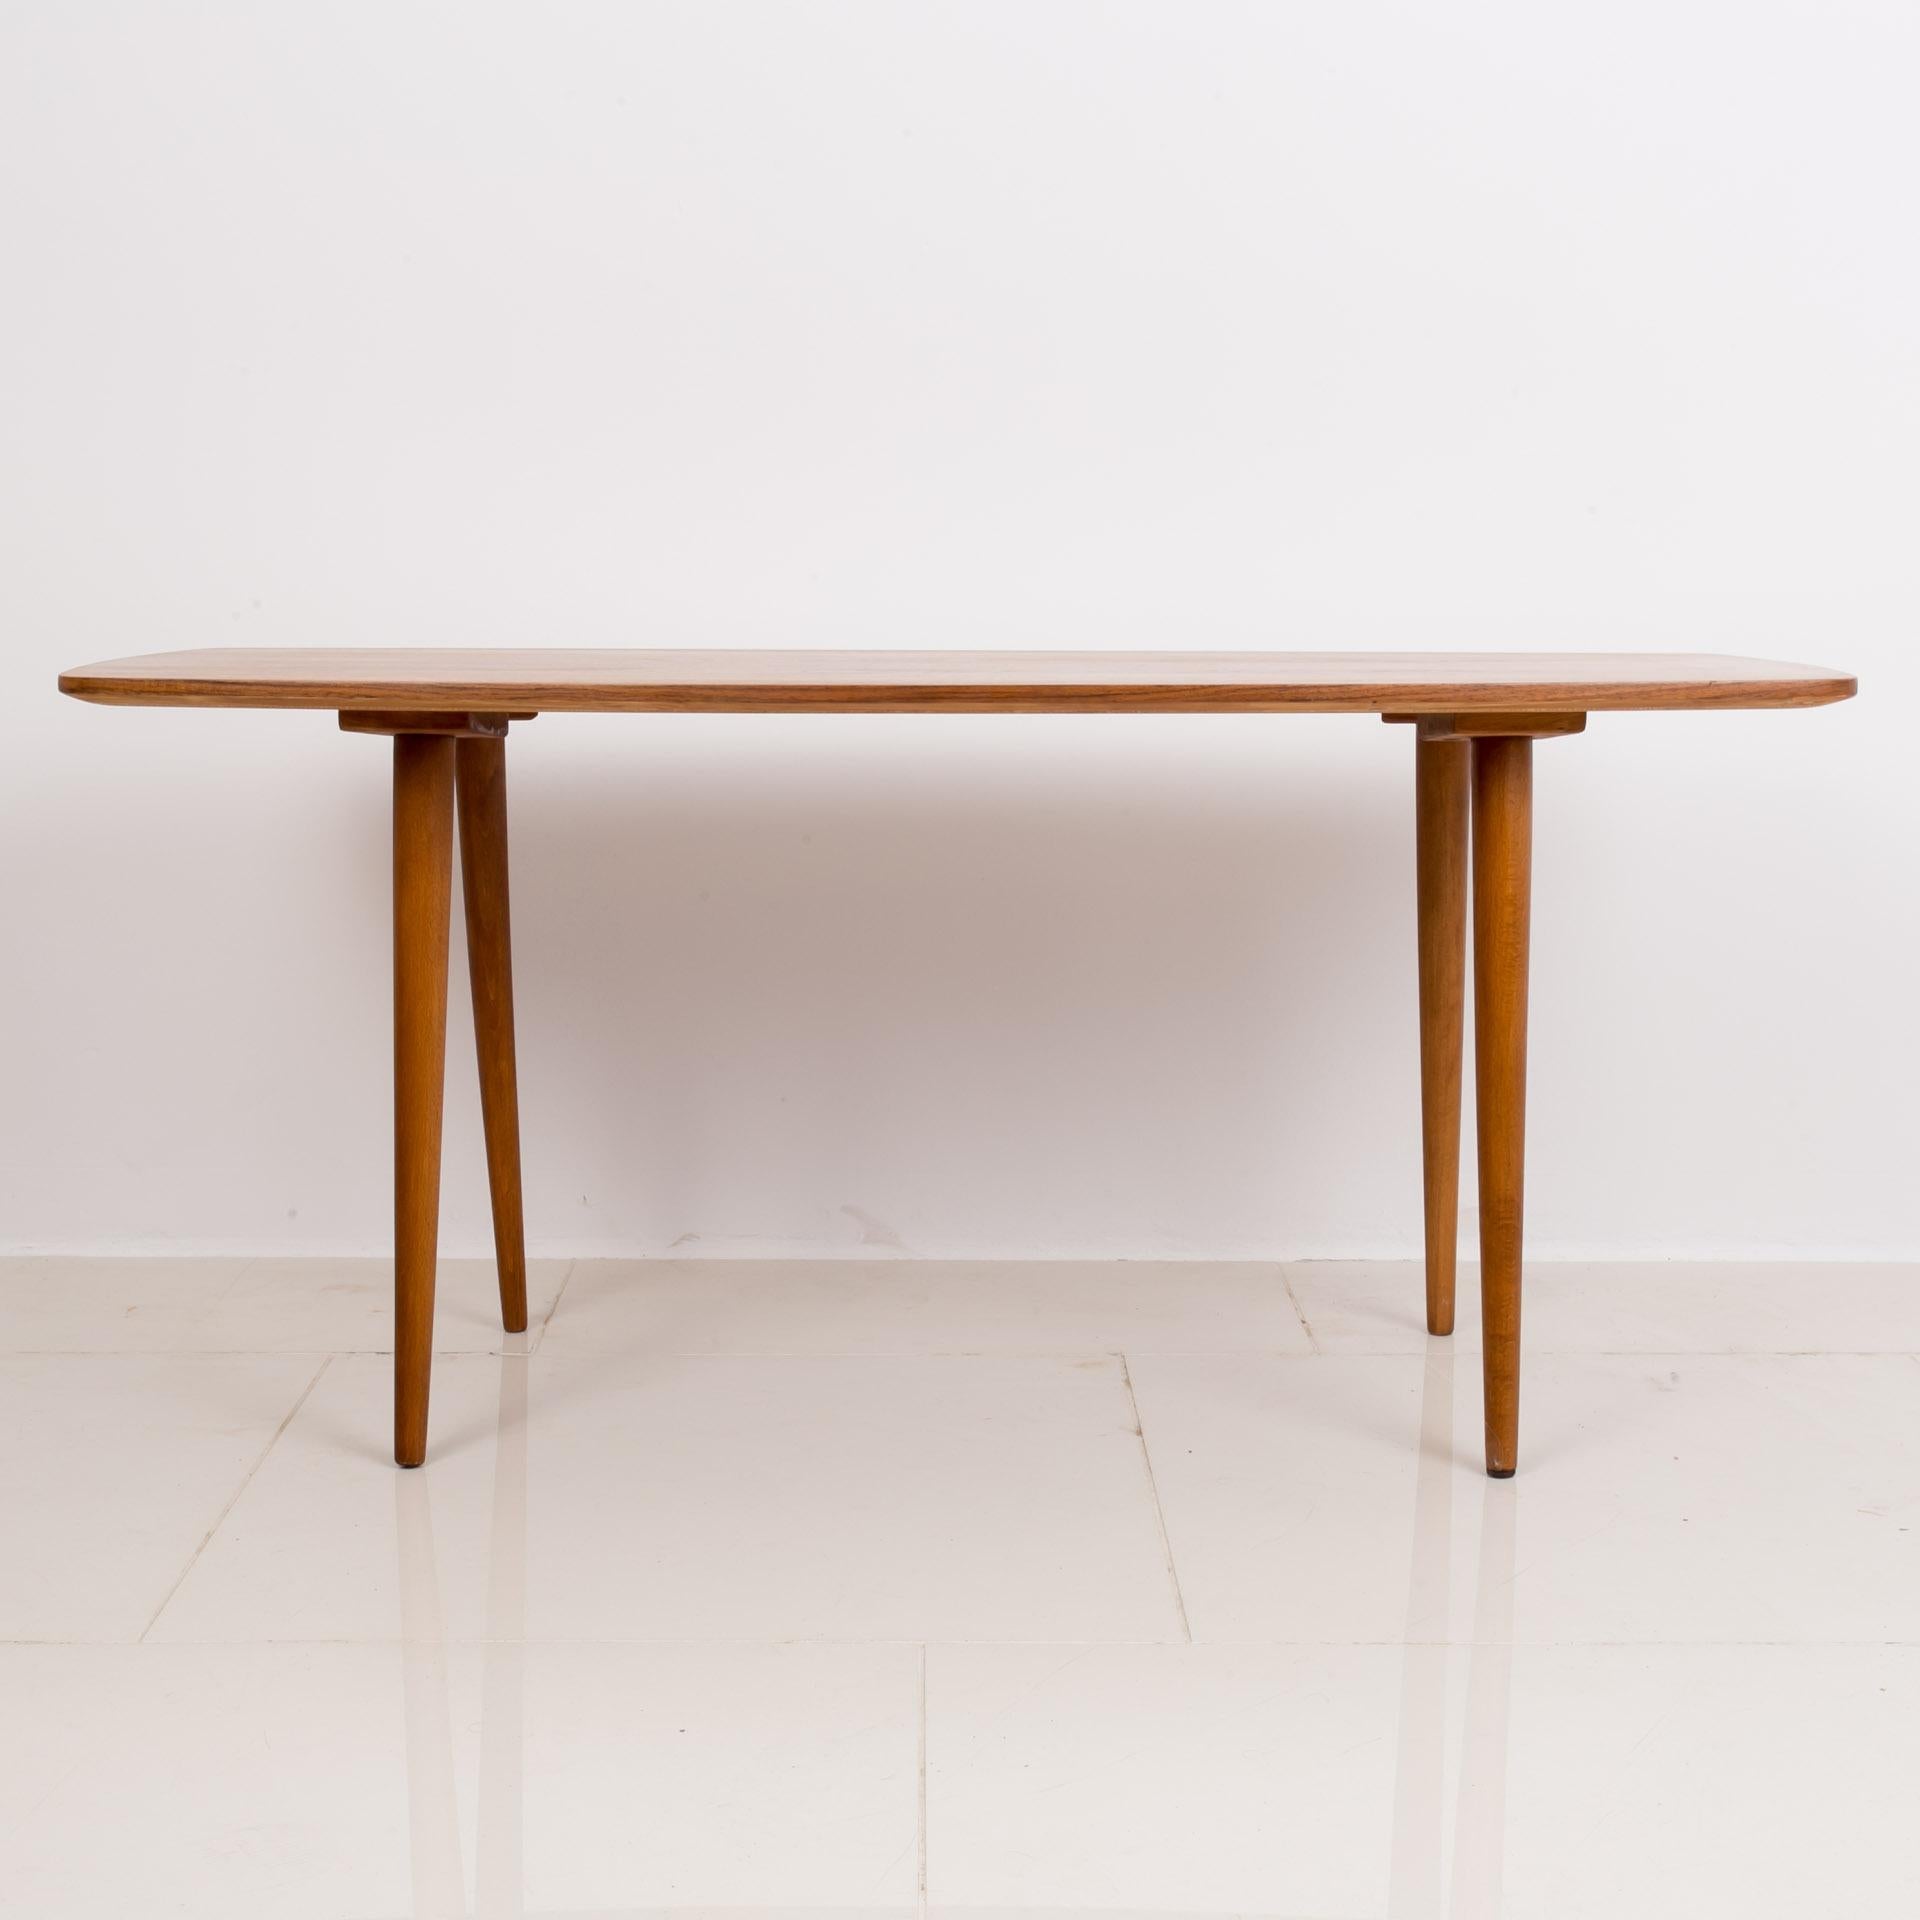 Cette belle table basse a été fabriquée en Tchécoslovaquie dans les années 1950 par le célèbre fabricant Jitona. Il comporte 4 pieds minces, ce qui était un élément typique des meubles de ces années-là. Elle est fabriquée en bois de hêtre et le